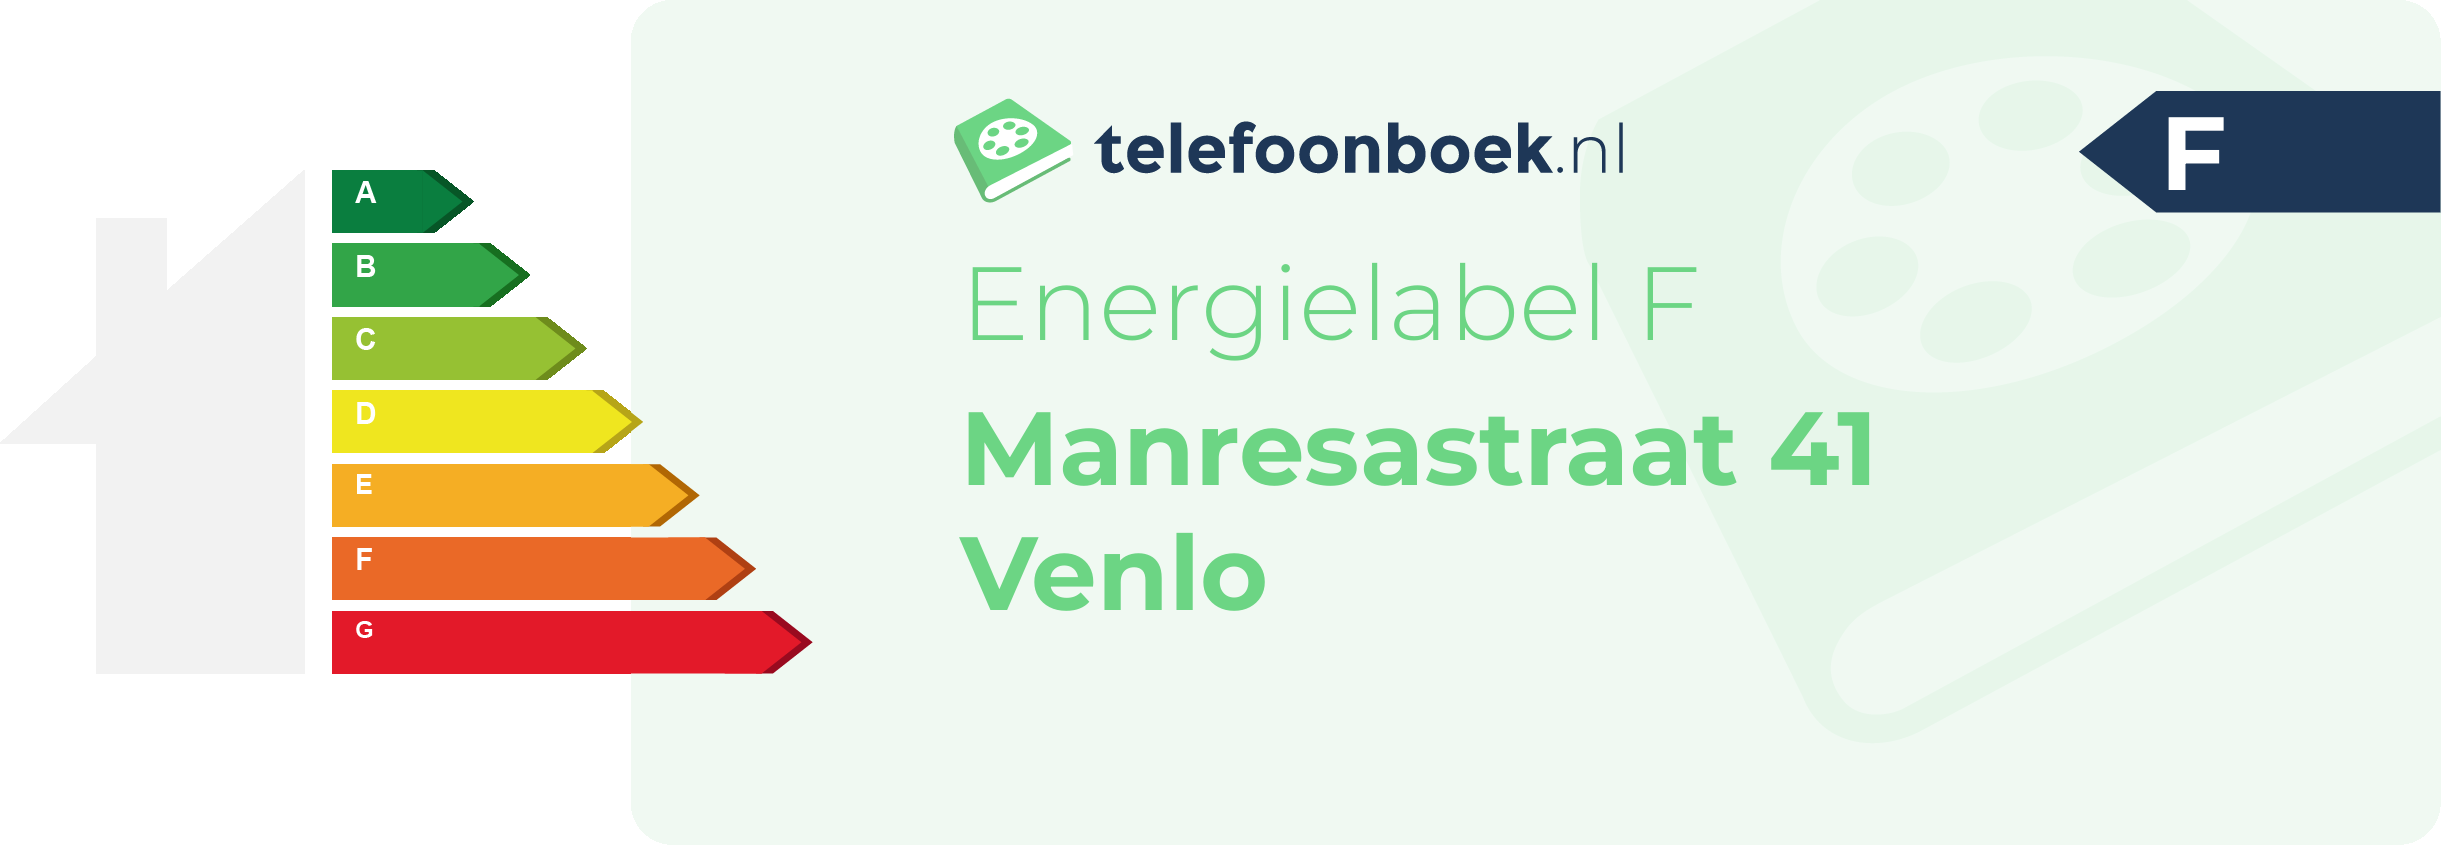 Energielabel Manresastraat 41 Venlo